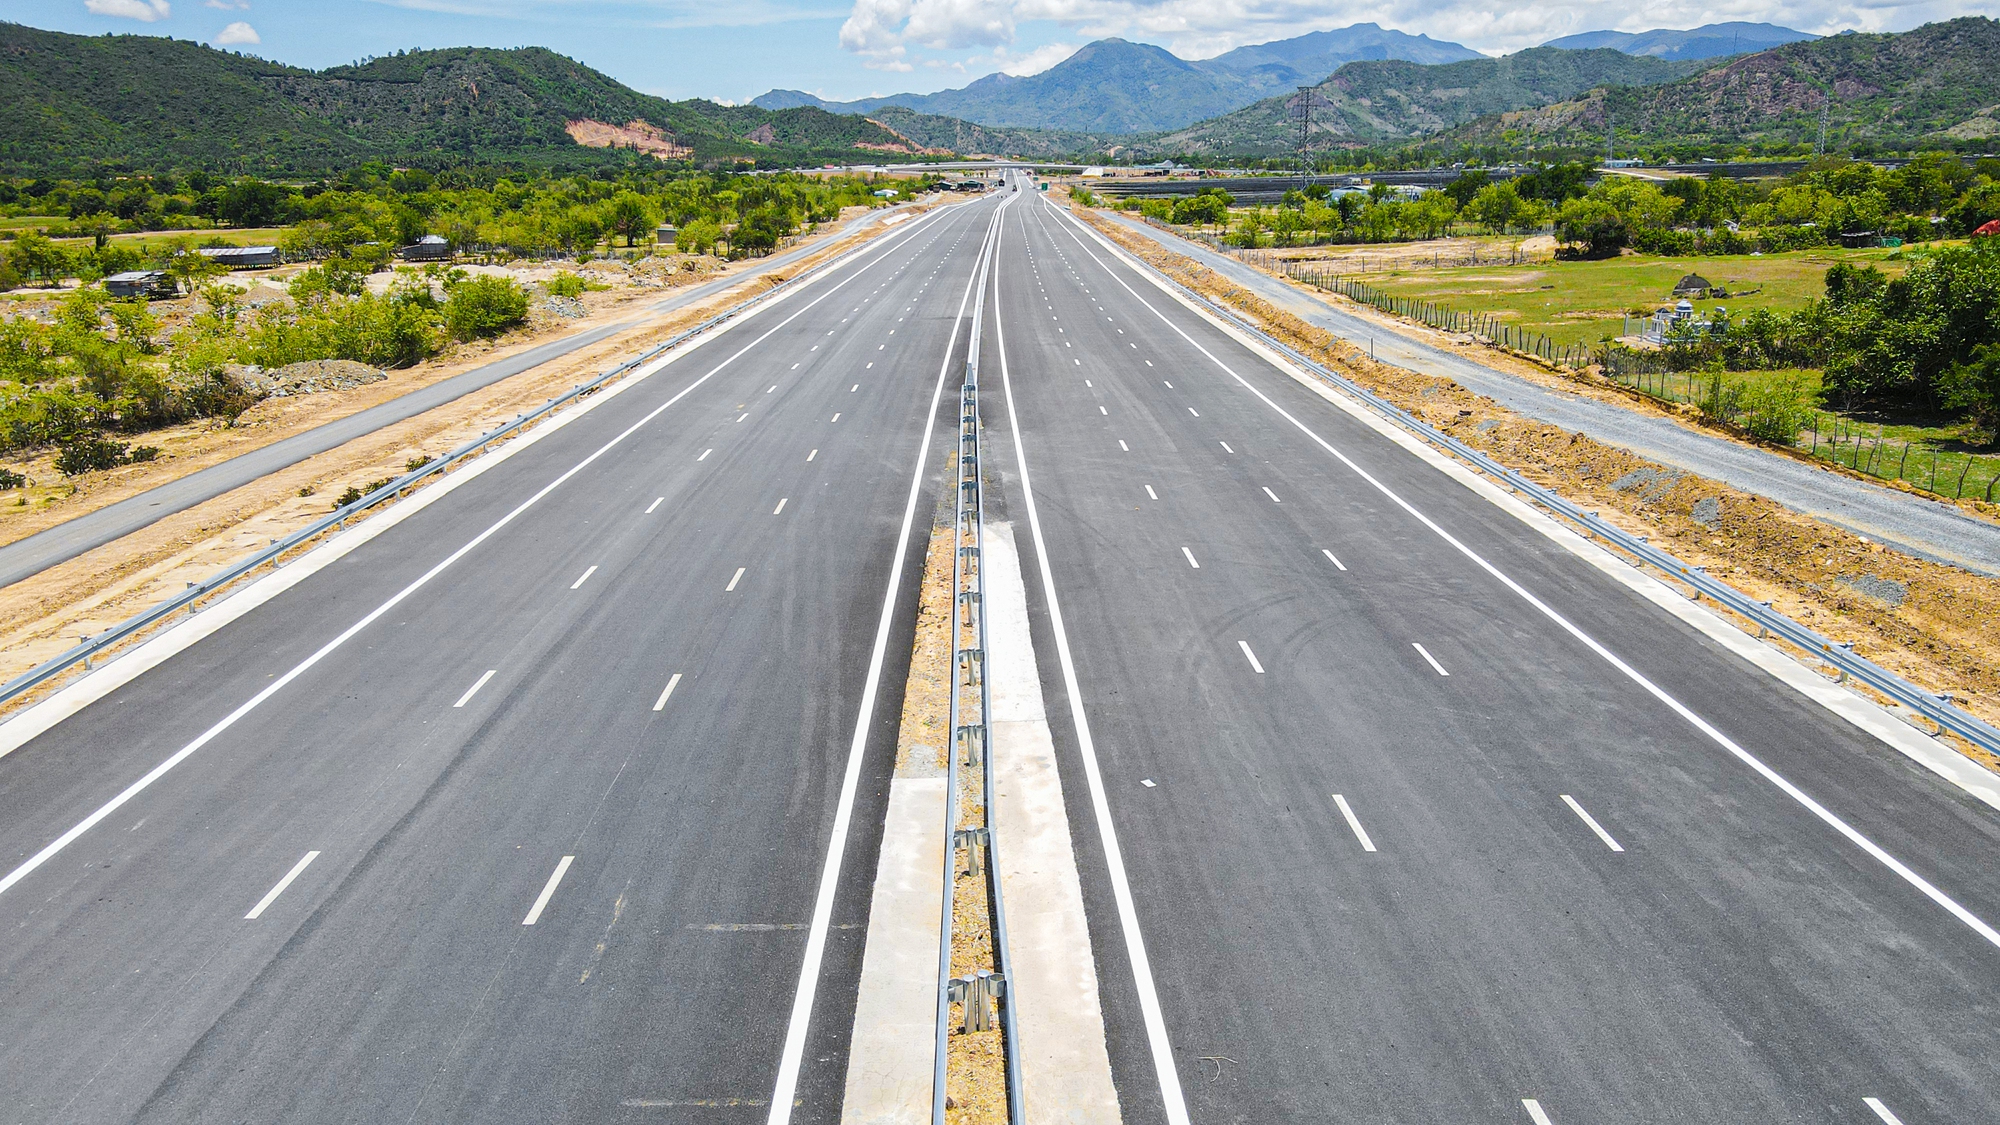 Tuyến cao tốc Bắc - Nam đoạn Nha Trang - Cam Lâm được đưa vào khai thác tuyến chính đã vượt tiến độ 3 tháng so với kế hoạch của nhà đầu tư dự án Ảnh Tạ Hải